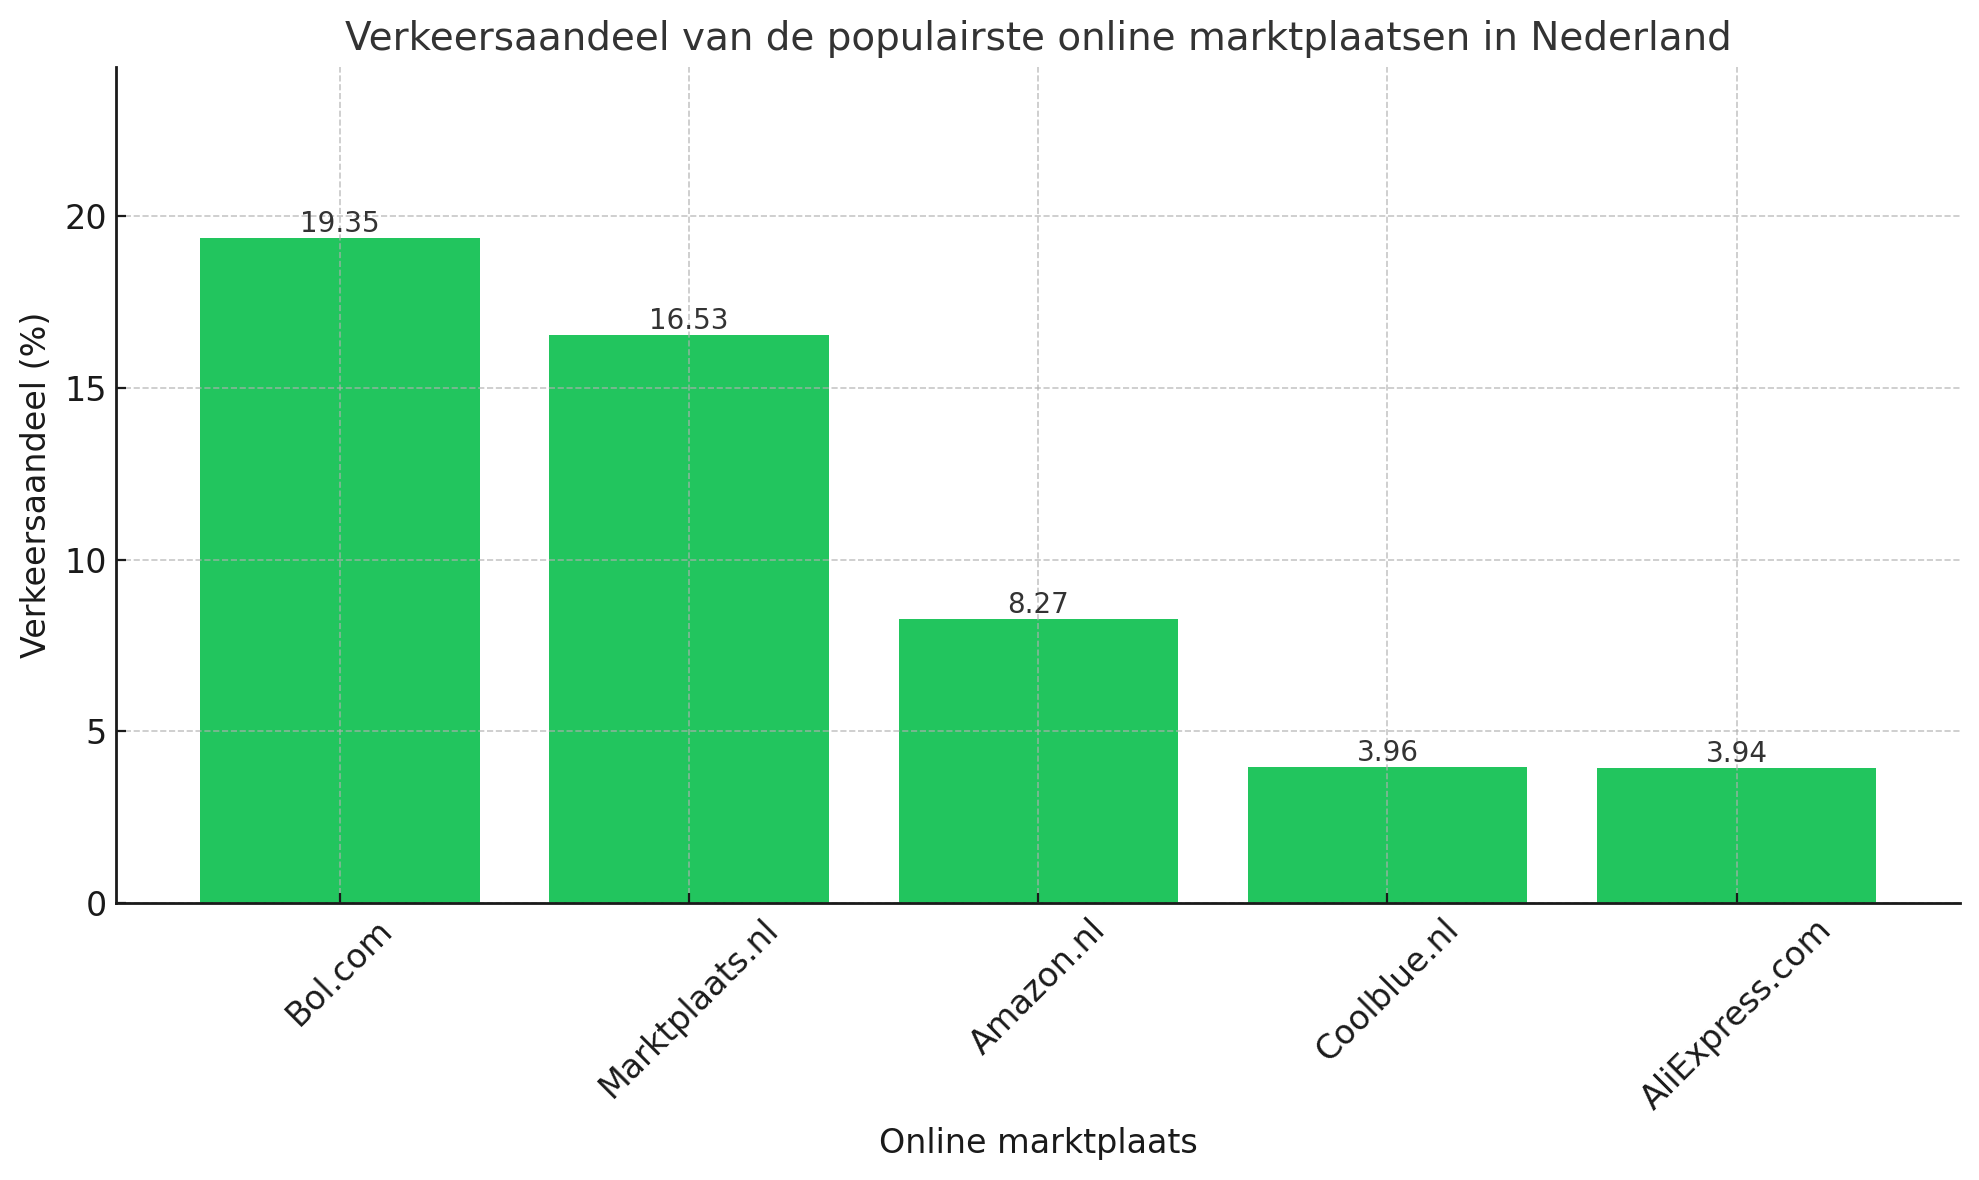 Verkeersaandeel van de populairste online marktplaatsen van Nederland